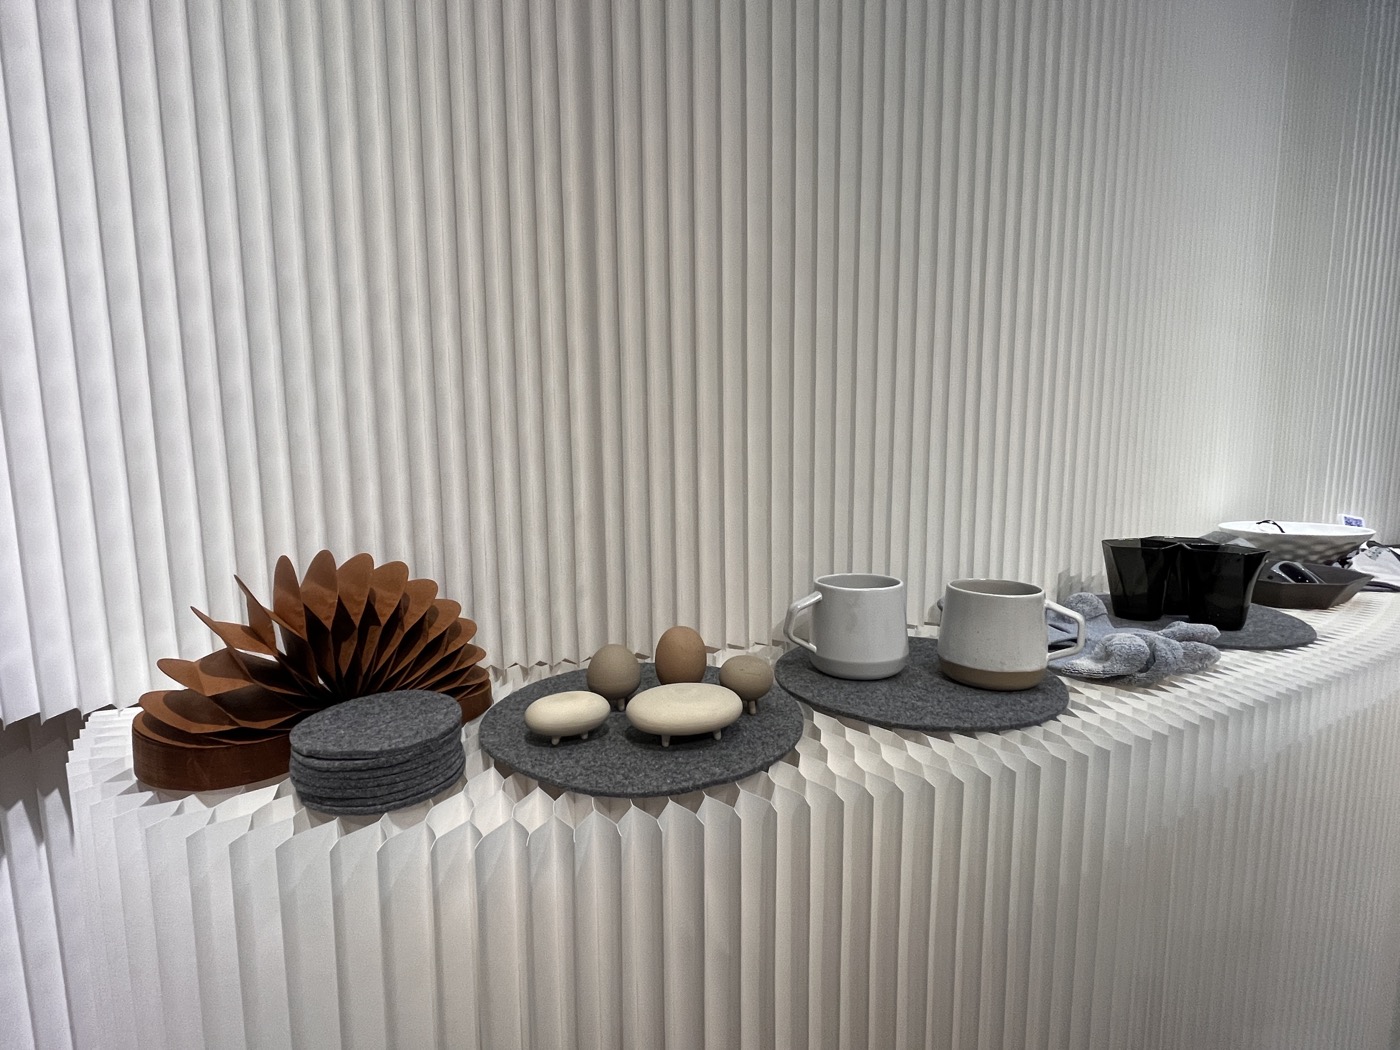 五福窯業以不同工藝雙色呈現循環陶瓷材質特色所打造的馬克杯